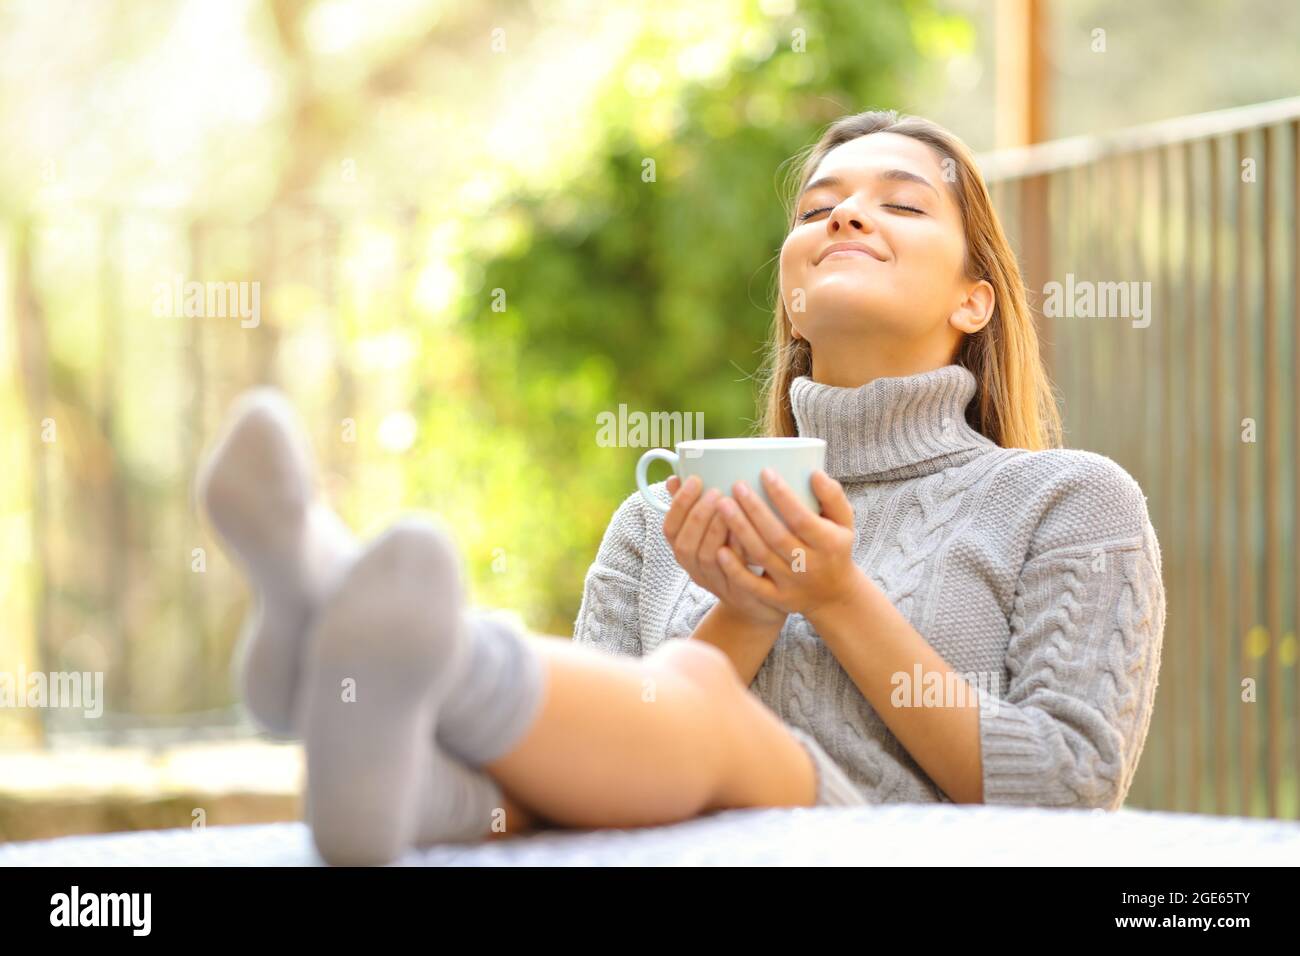 Unbeschwerte Frau, die frische Luft atmet und im Winter in einem Garten zu Hause Kaffee trinkt Stockfoto